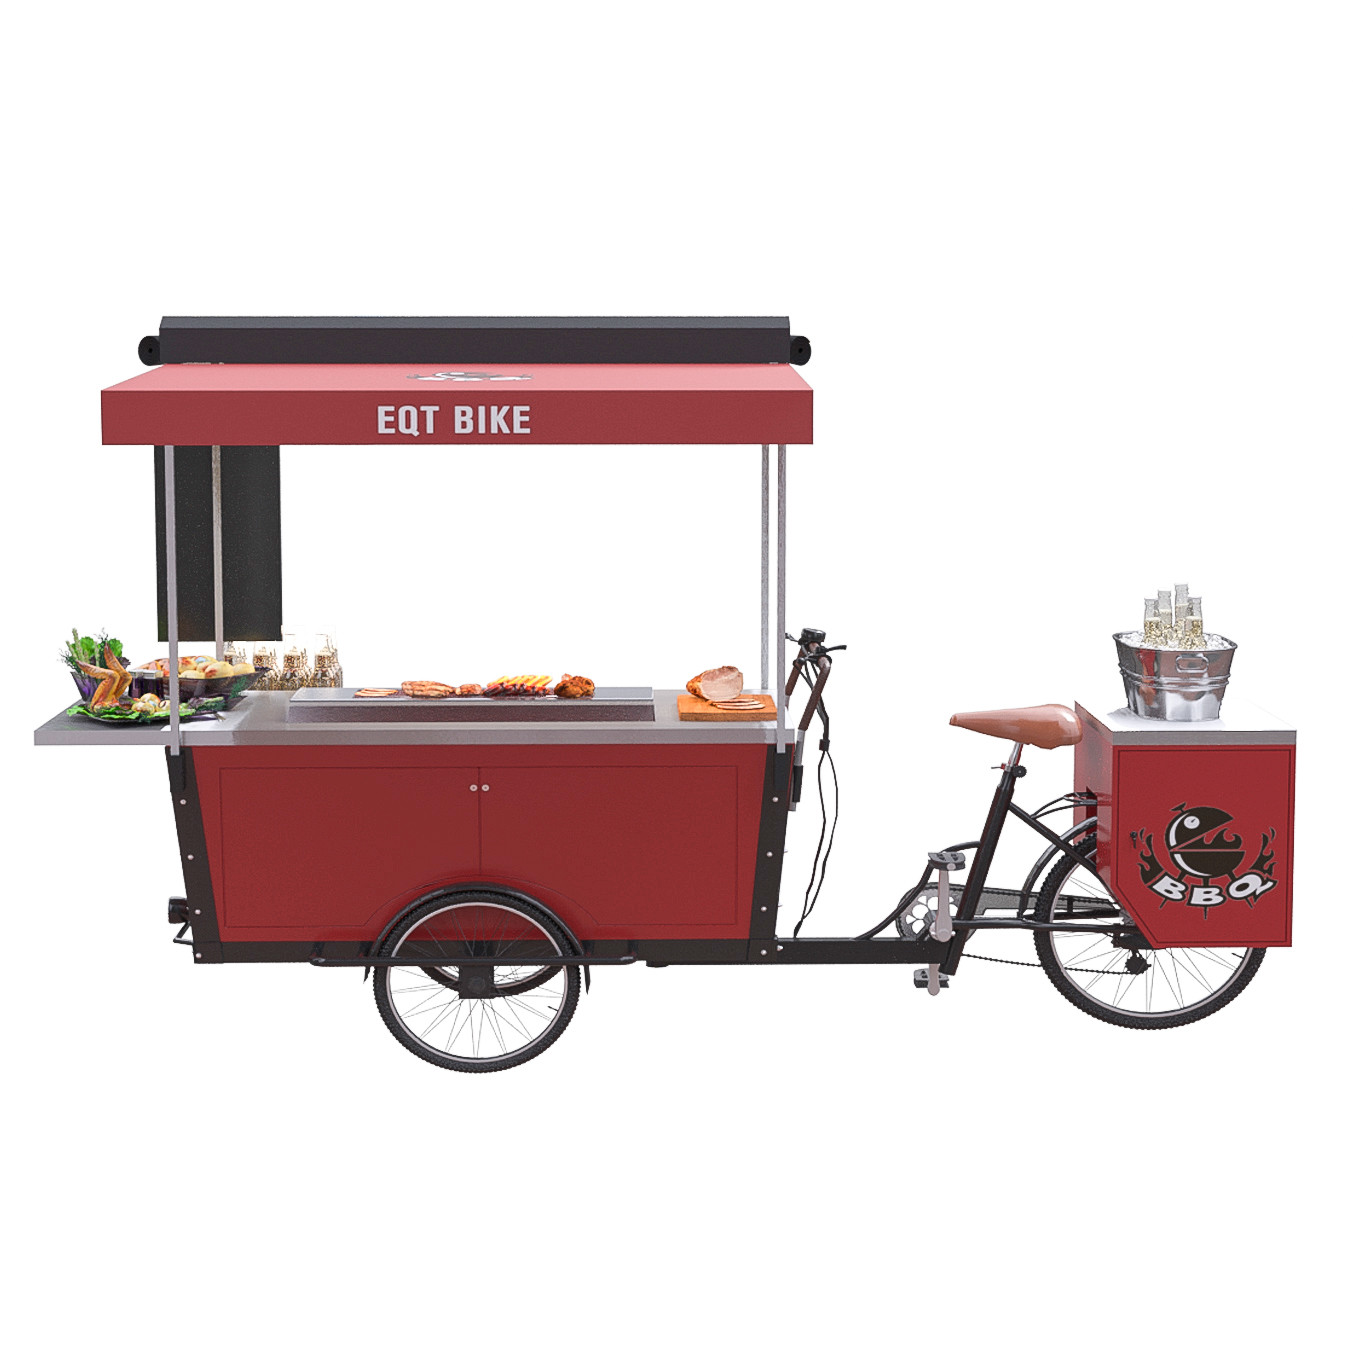 Trójkołowy wózek elektryczny z grillem typu Hot Dog Street Vending